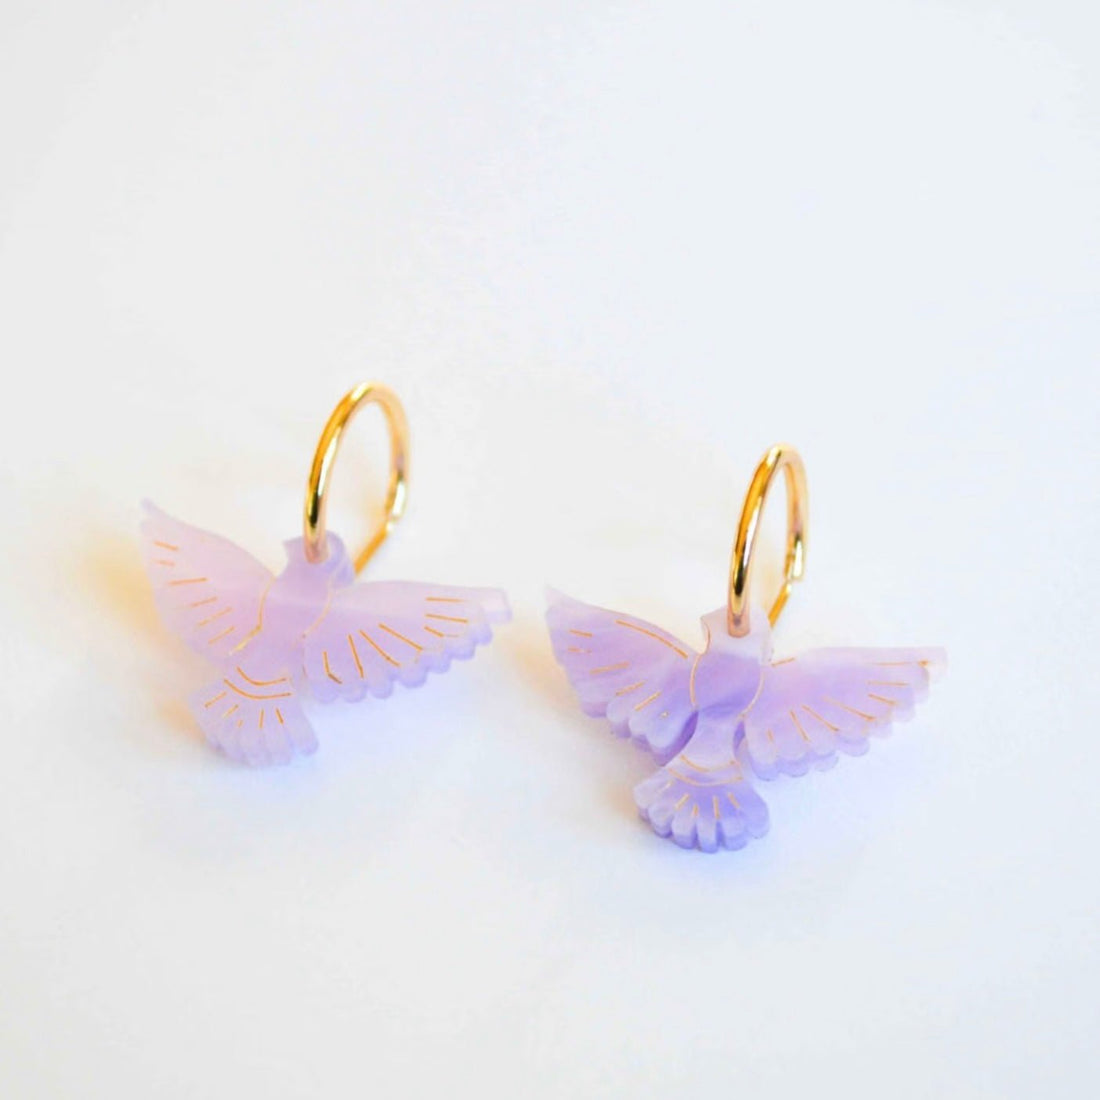 Hagen + Co - Lovebird Earrings, Lavender - The Flower Crate